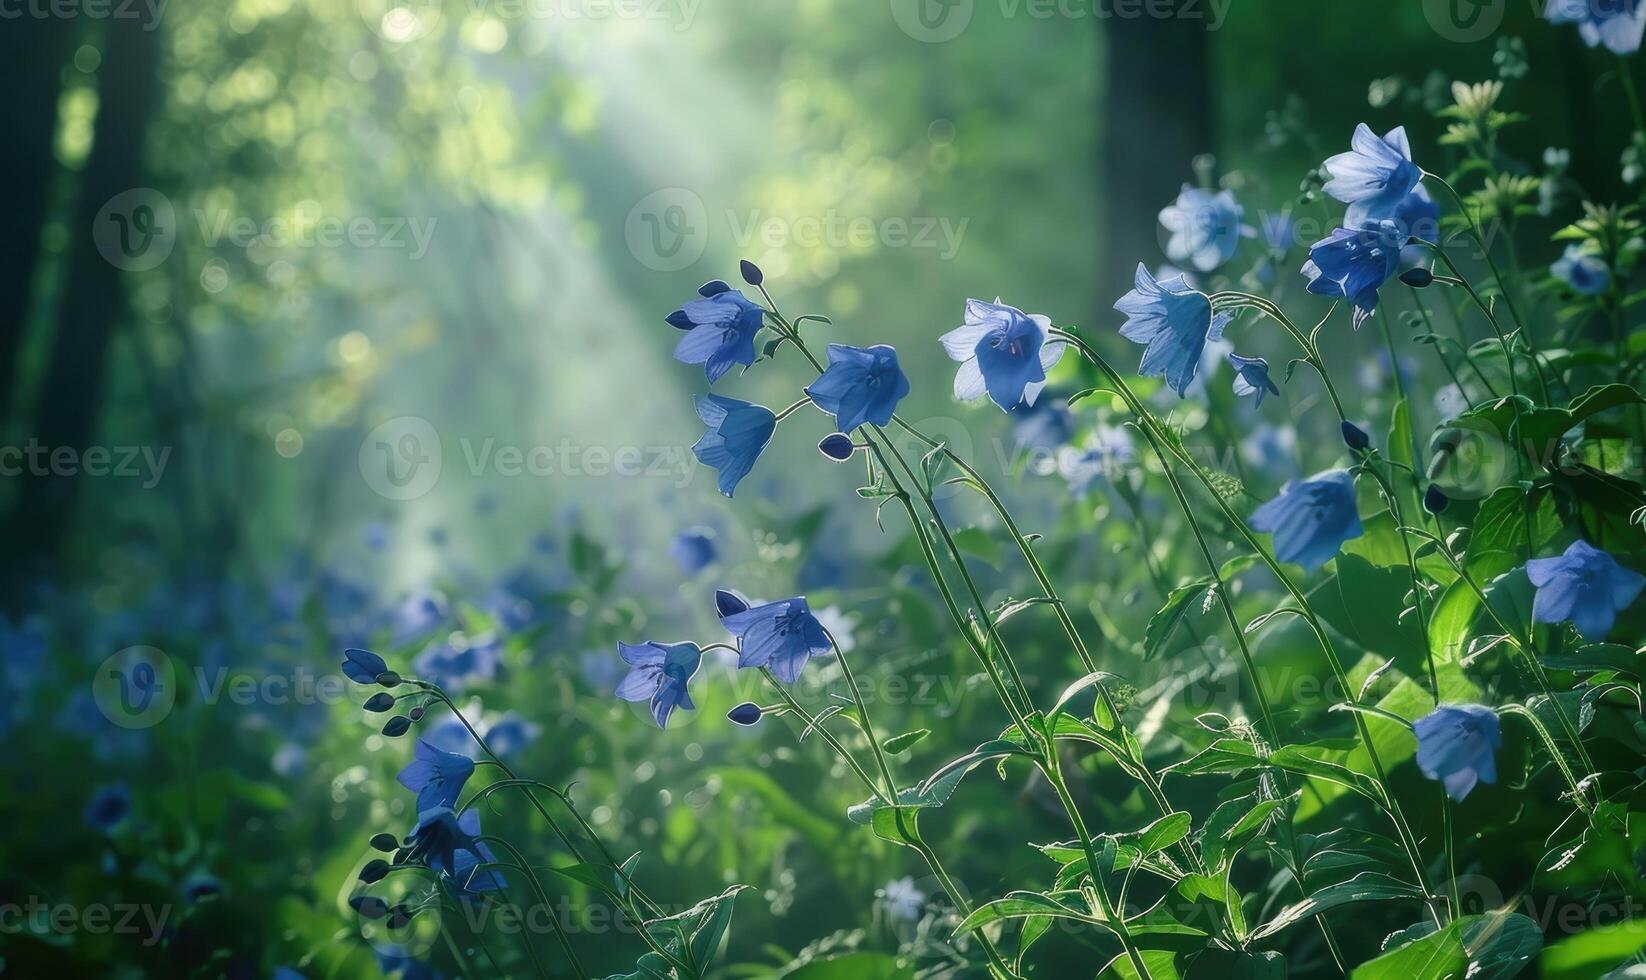 klokjesbloemen in een bos- opruimen, detailopname visie, selectief focus foto